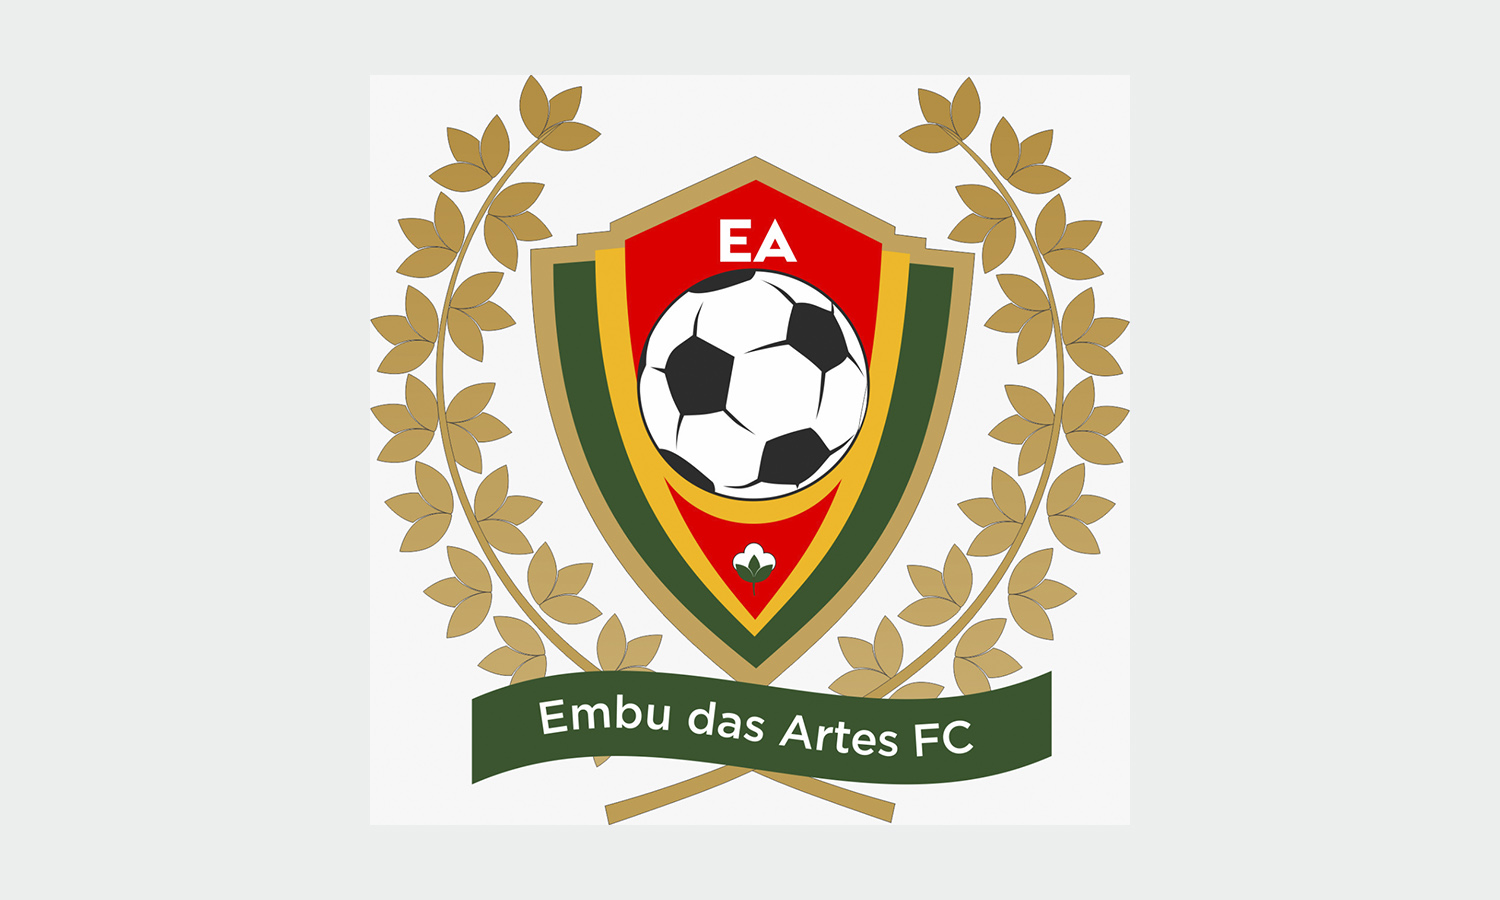 Embu das Artes F. C. encara o R6 pela Copa Capital Paulista